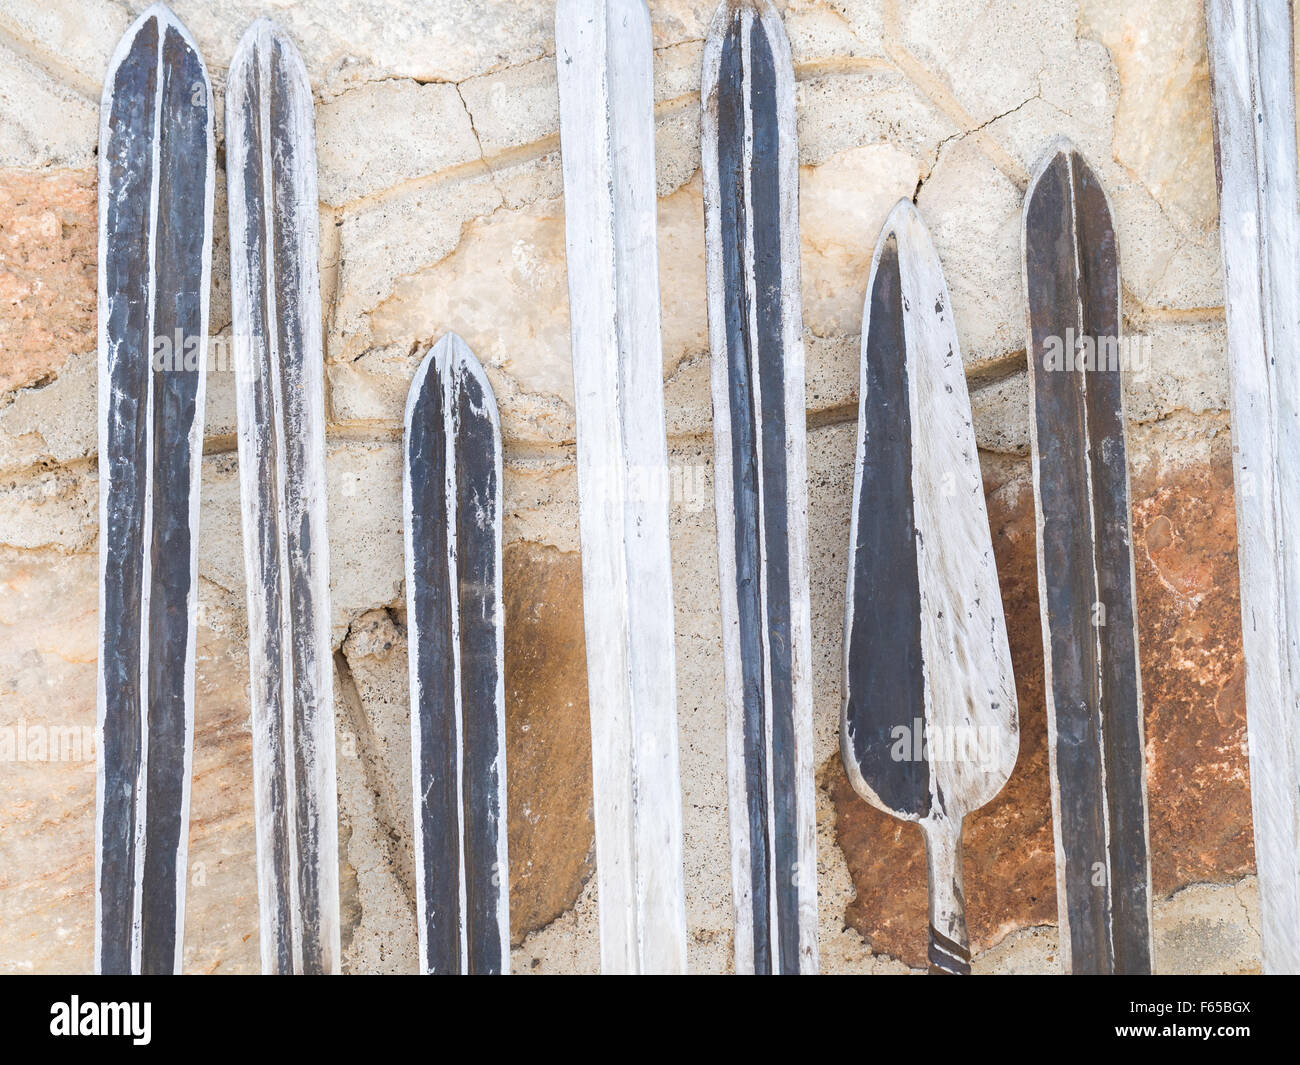 Maasai-Waffen: Schwerter, Speere und Messer, als Andenken an einen lokalen Maasai-Markt verkauft. Stockfoto